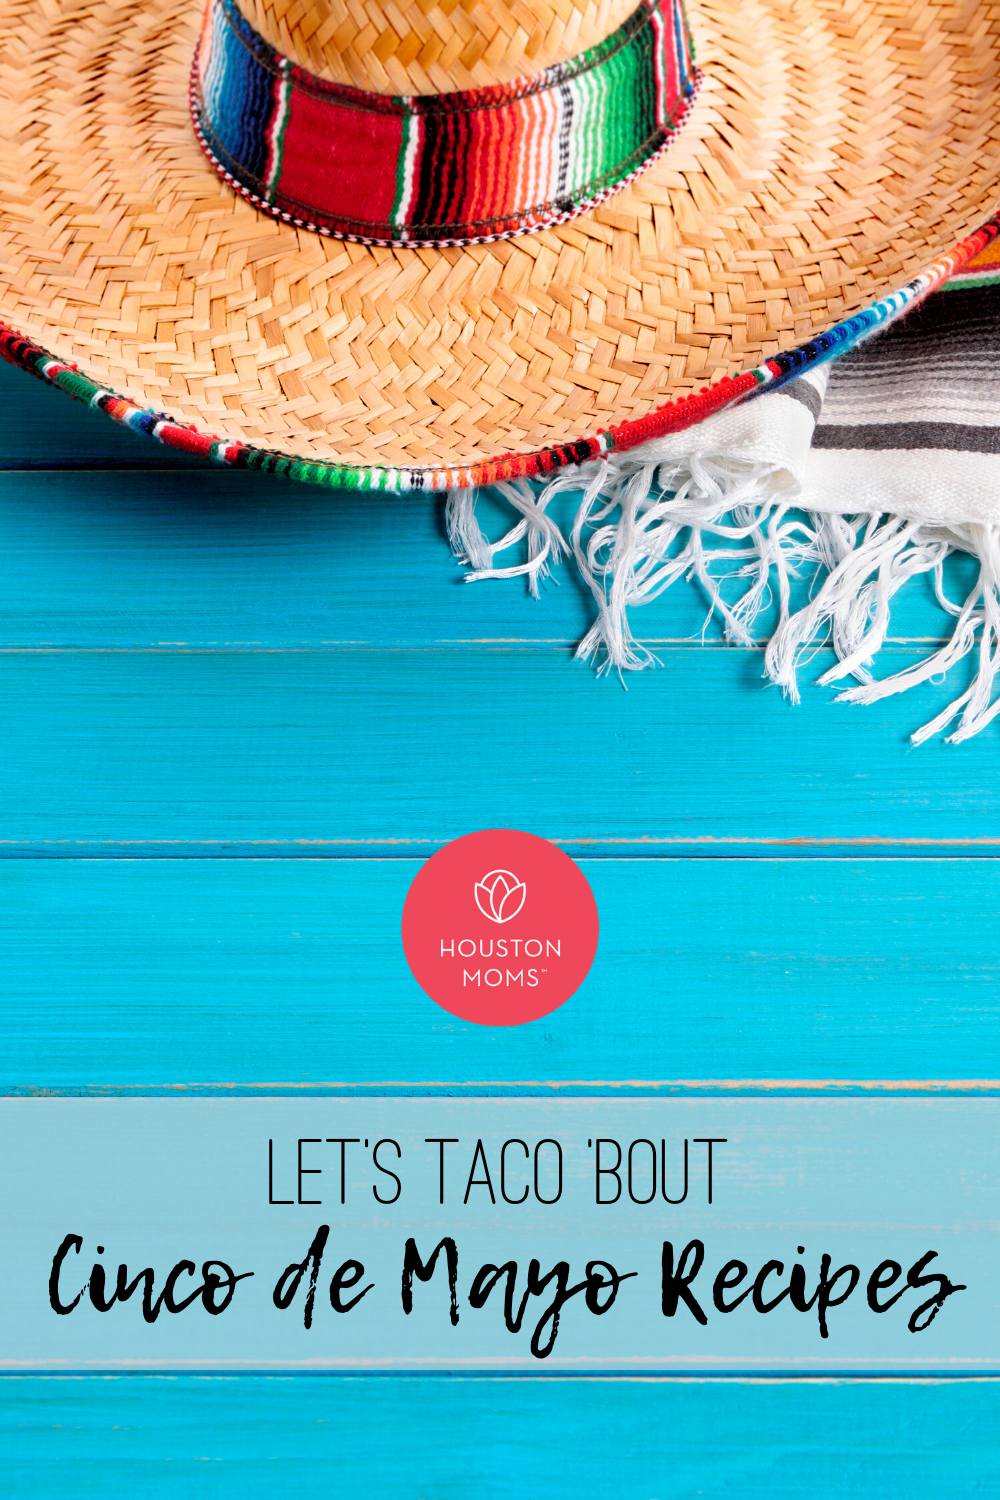 Houston Moms "Let's Taco 'Bout Cinco de Mayo Recipes" #houstonmomsblog #houstonmoms #momsaroundhouston